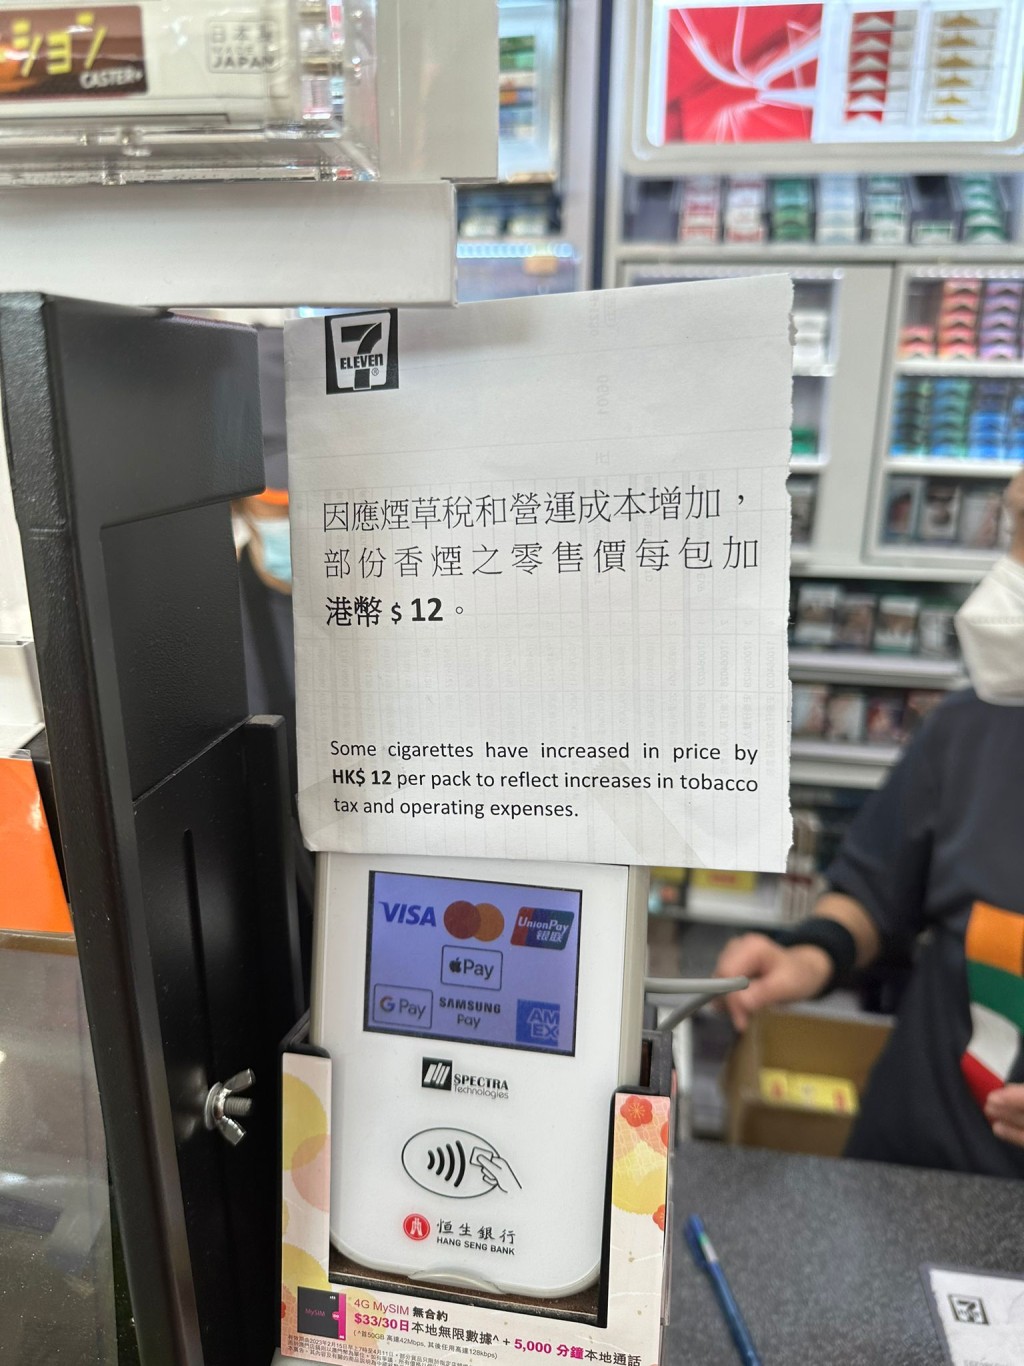 将军澳的7-Eleven已在收银机当眼处贴出告示，指「因应烟草税和成本营运增加，部份香烟之零售价每包加港币$12。」